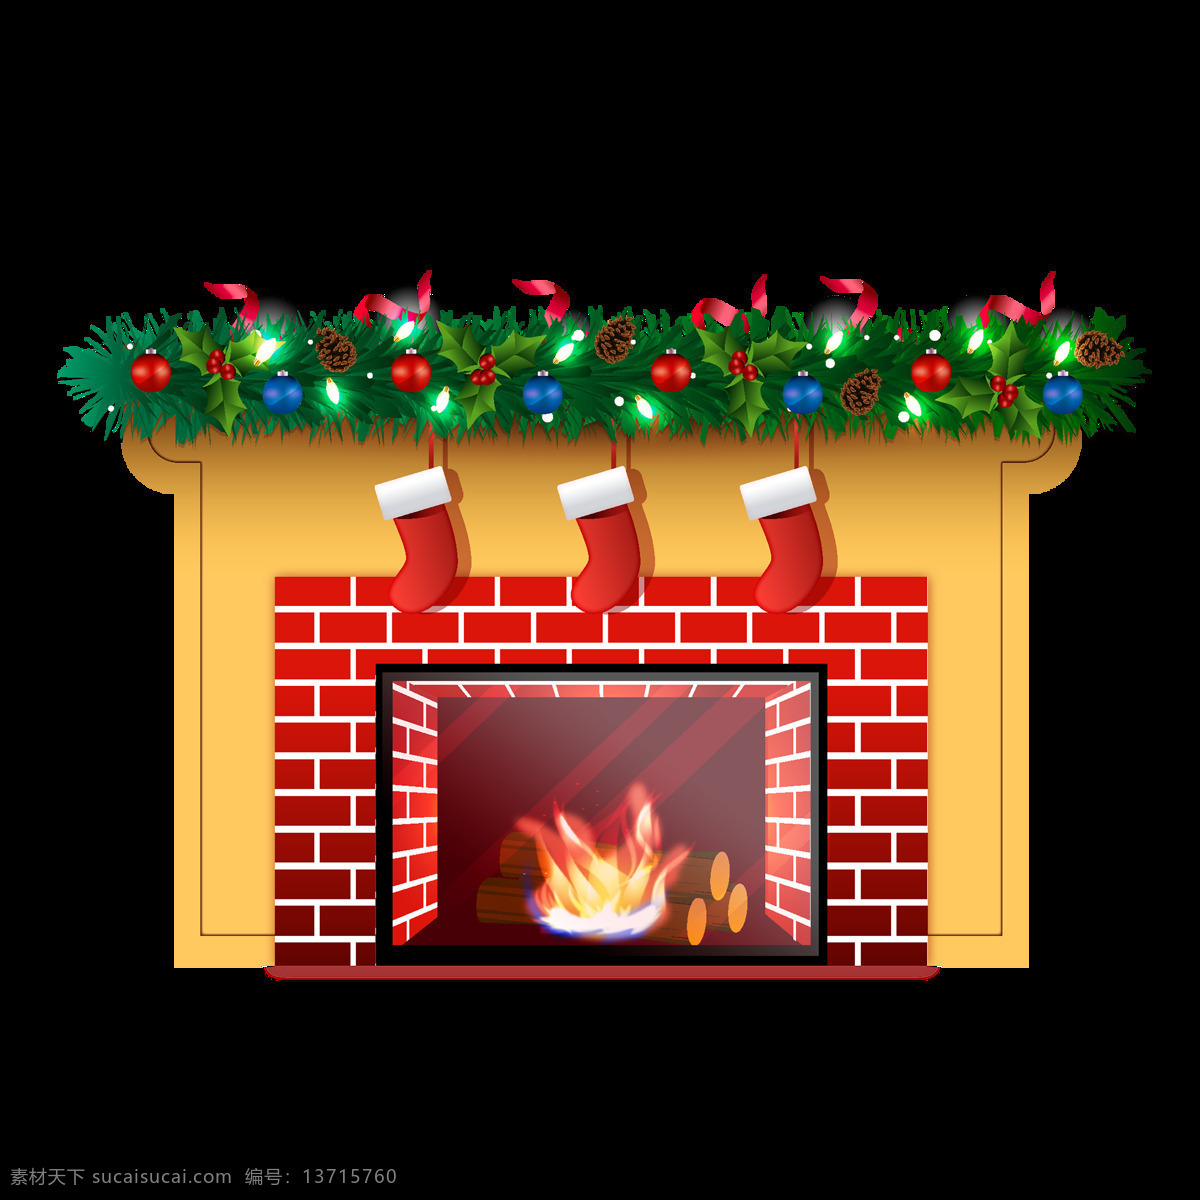 圣诞节 壁炉 原创 元素 西方节日 圣诞夜 袜子 圣诞节花环 炉火